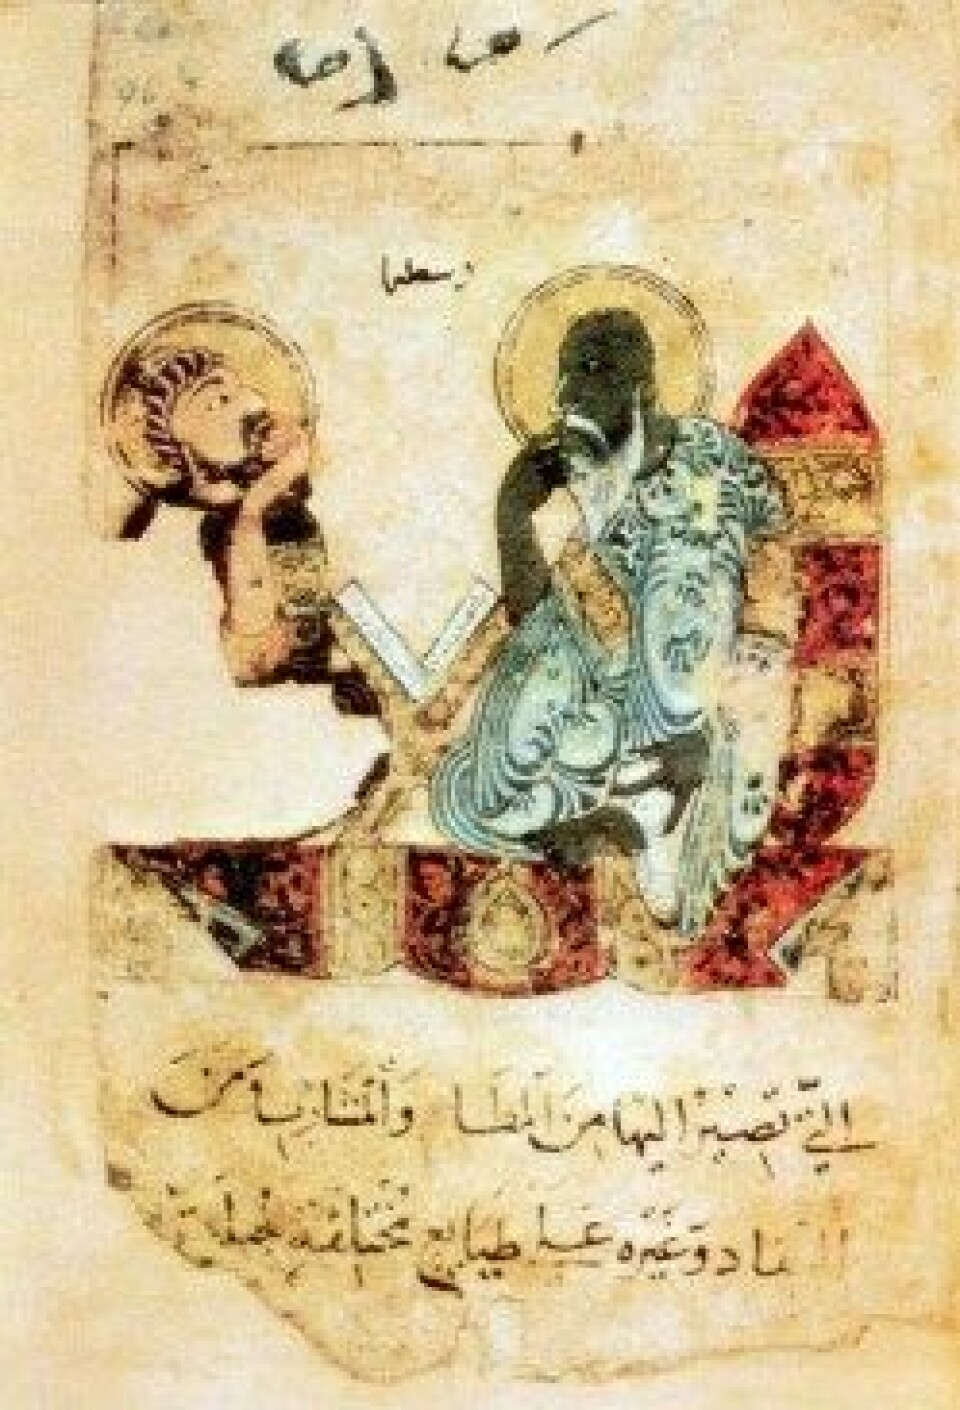 Aristoteles portrettert i arabisk manuskript fra 1200-tallet. (Kilde: Wikimedia commons)